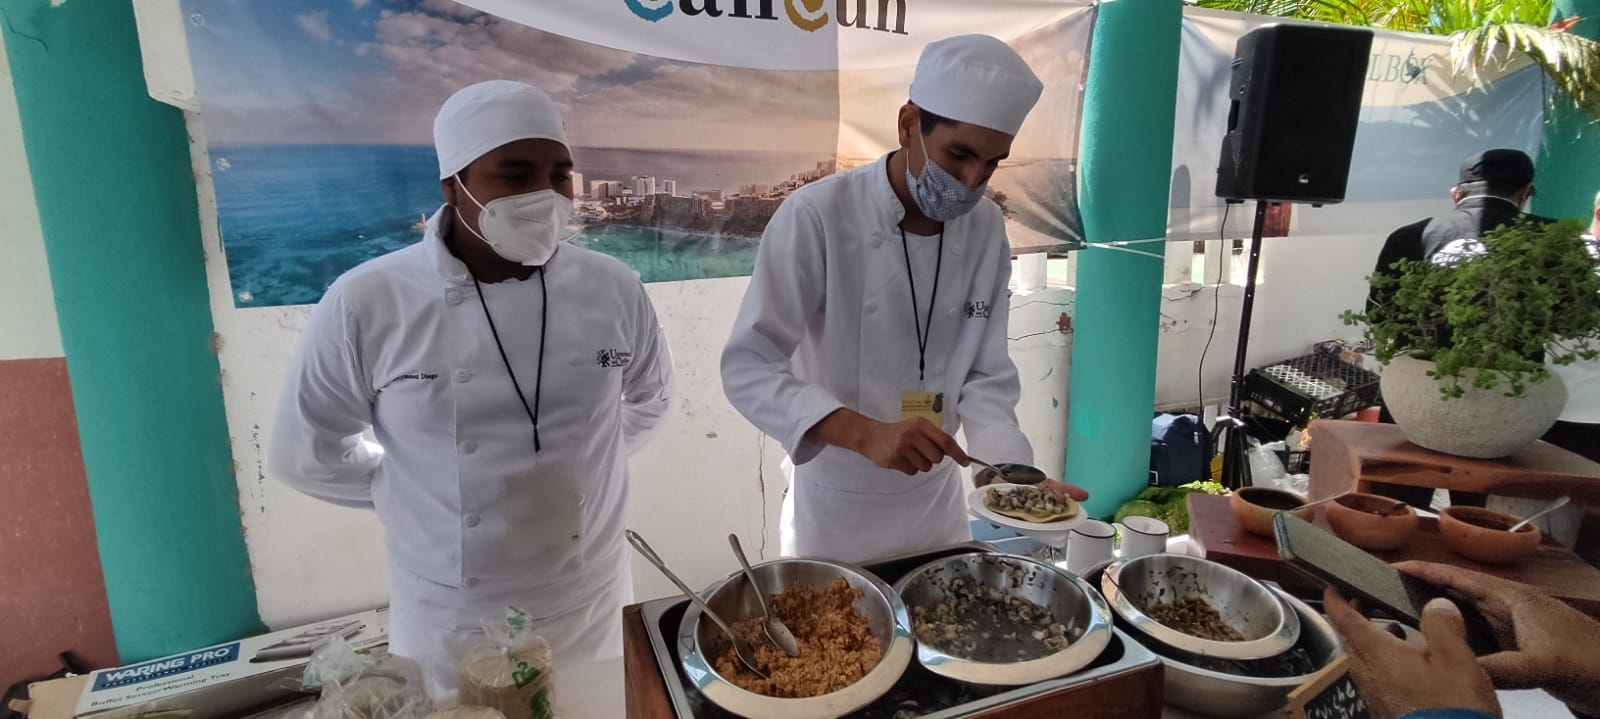 Algunos de los participantes del Festival Gastronómico del Caribe Mexicano son estudiantes universitarios